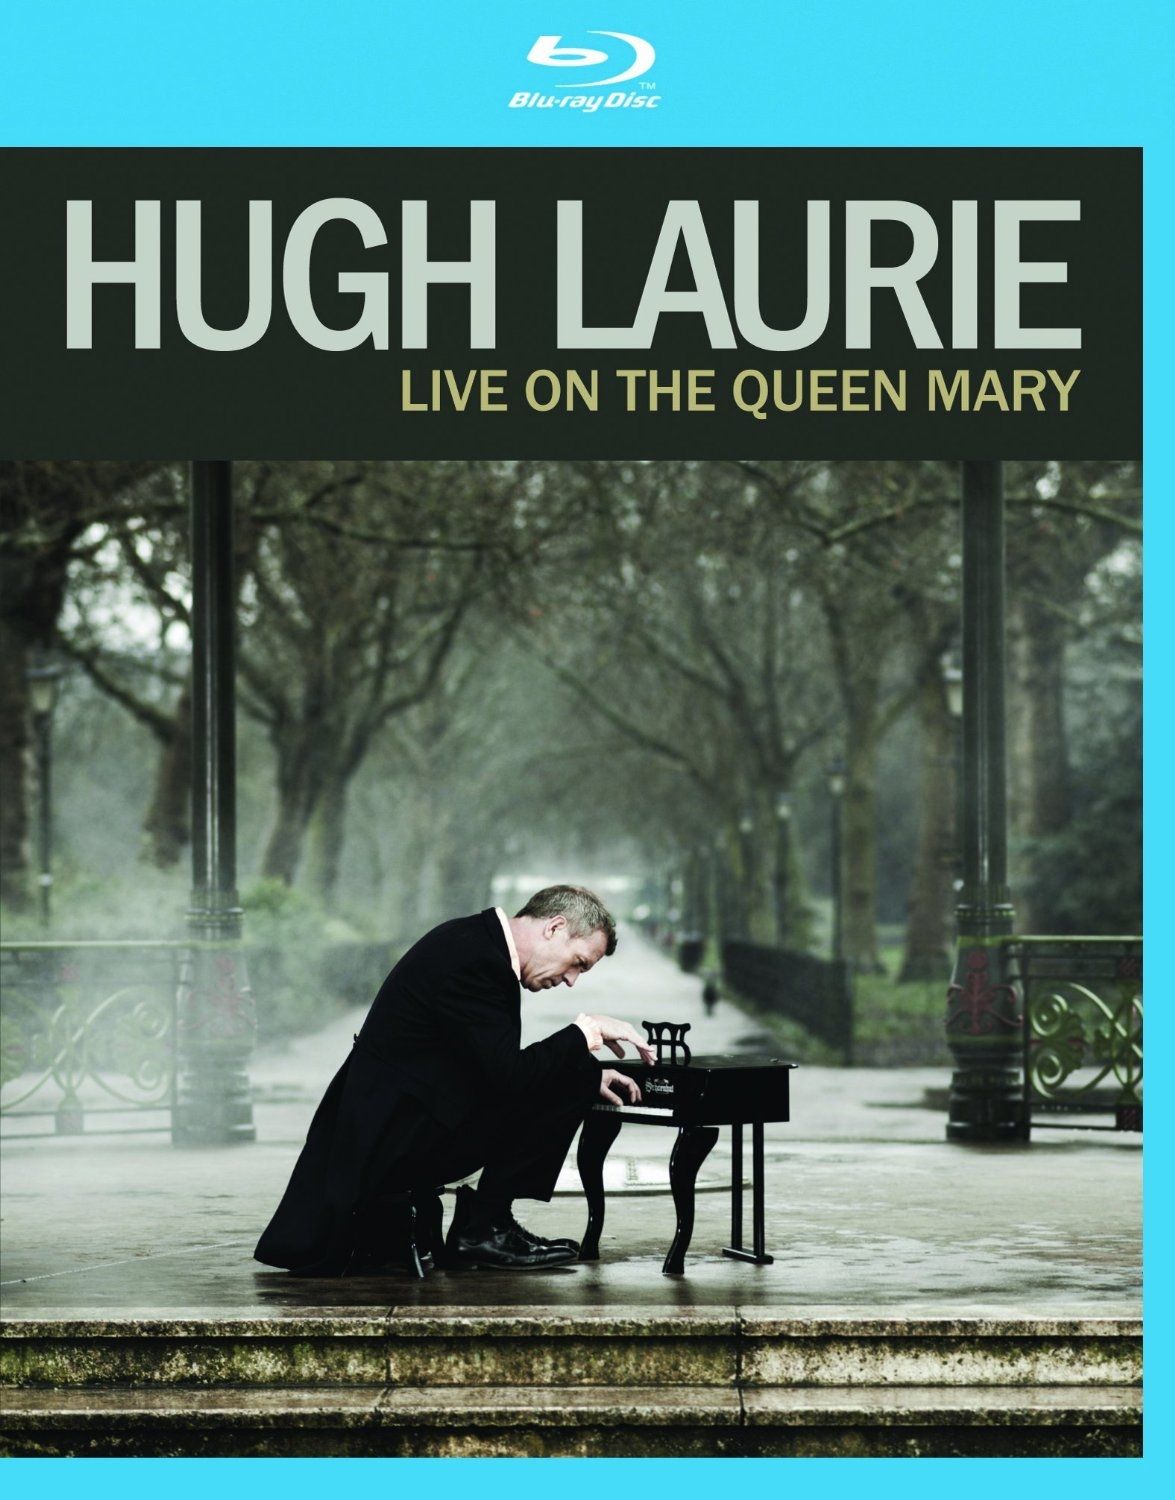 Imagem do álbum Live On The Queen Mary do(a) artista Hugh Laurie